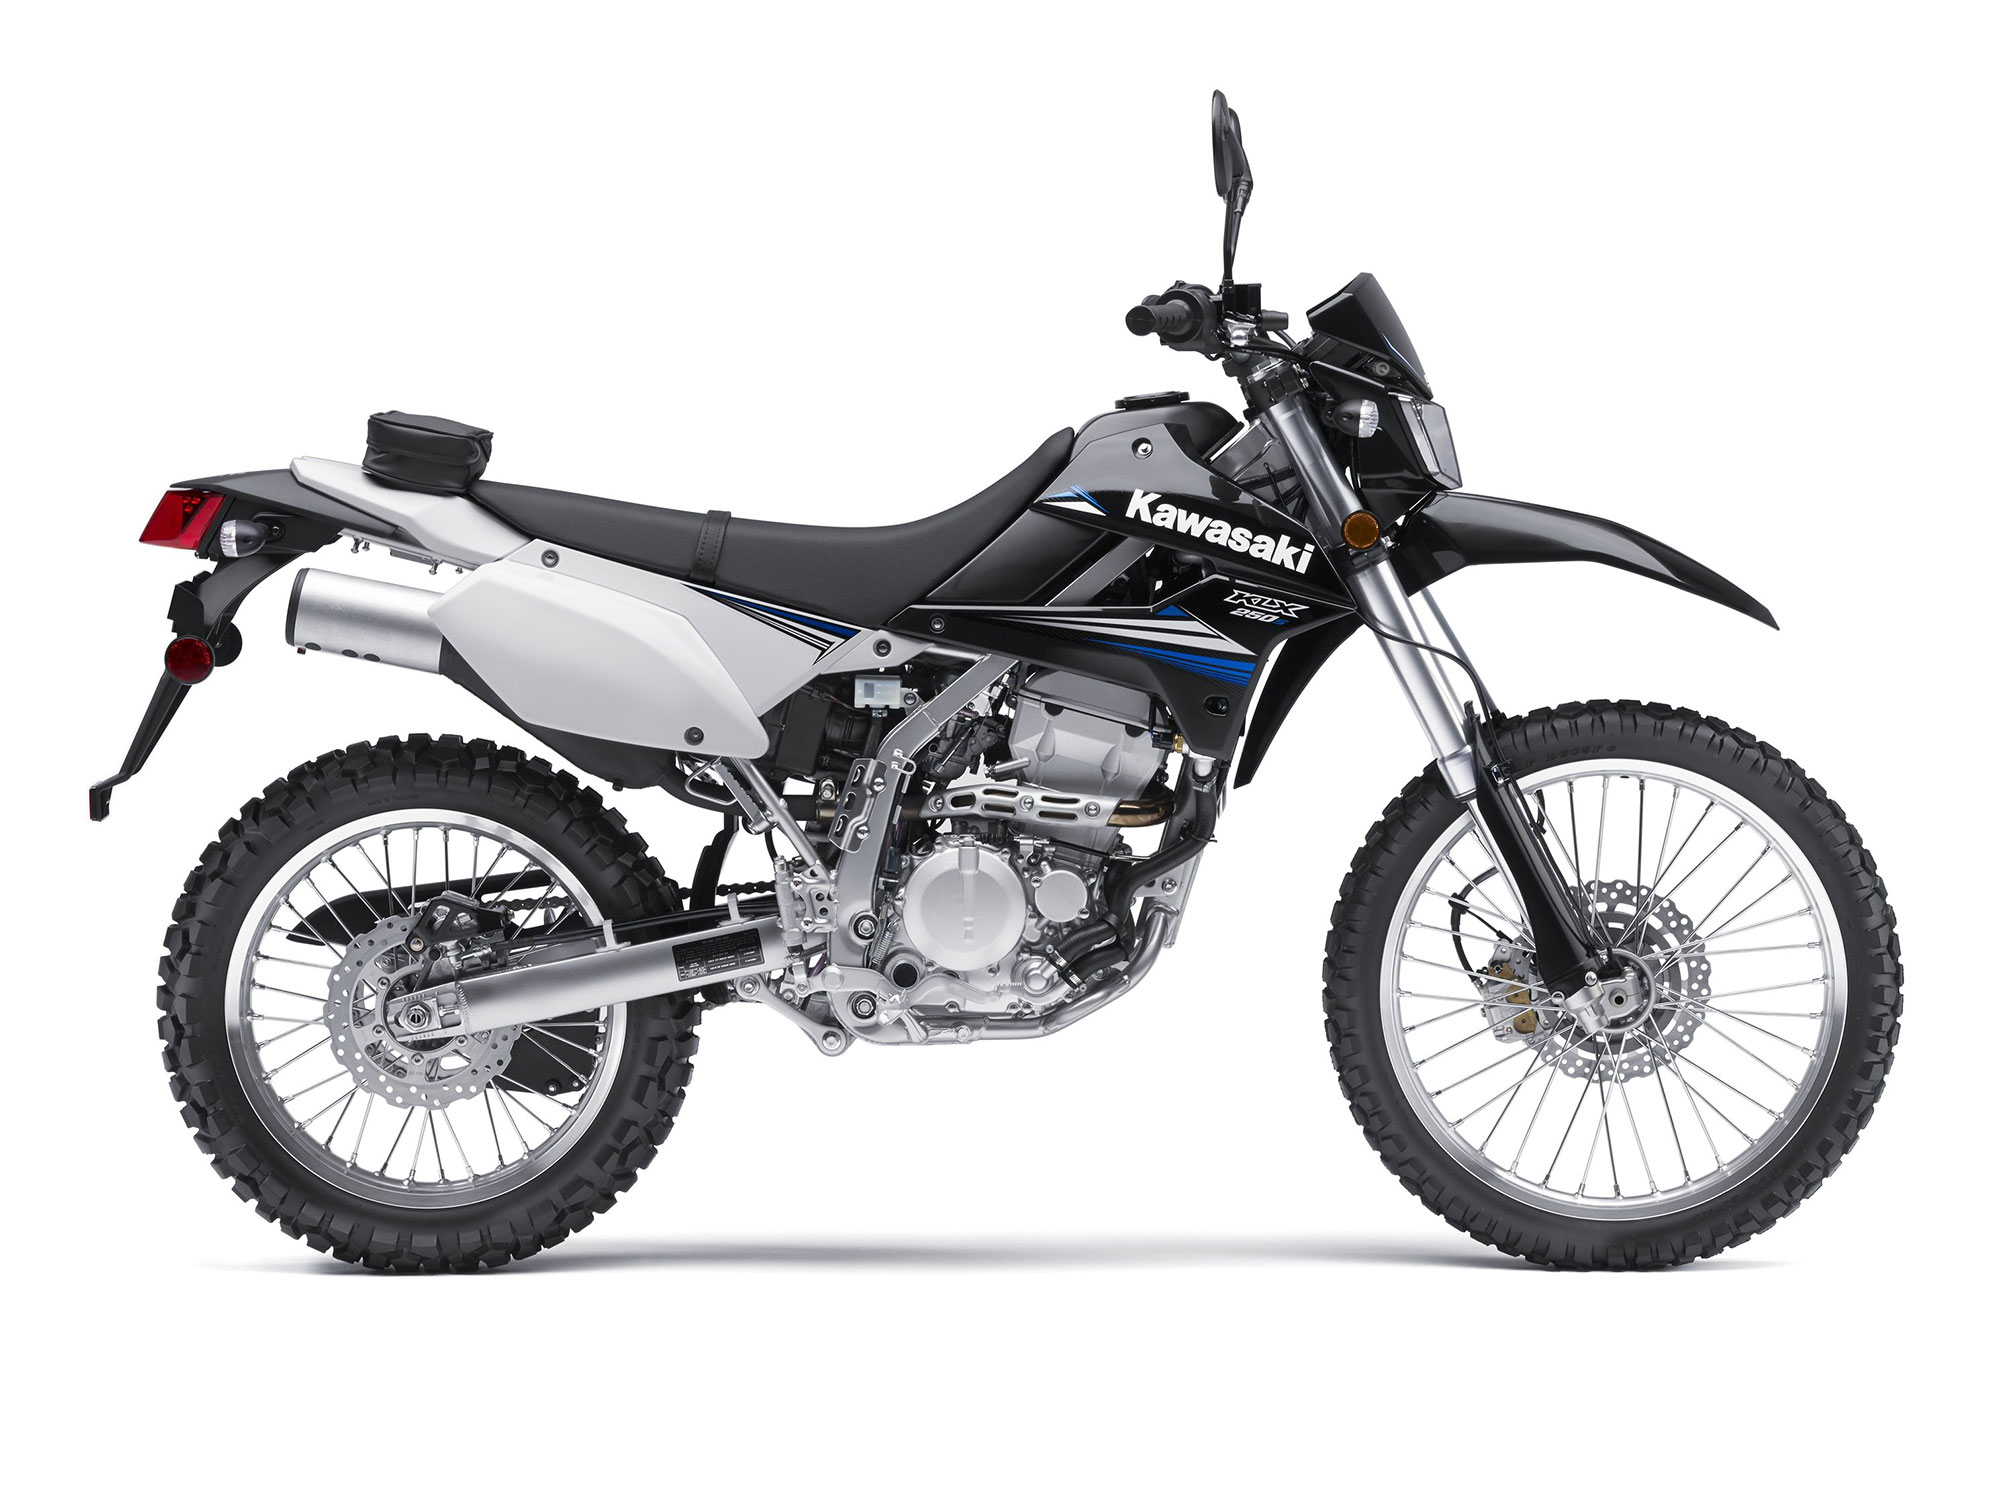 2014, Kawasaki, Klx250s, Dual purpose, Dirtbike Wallpaper